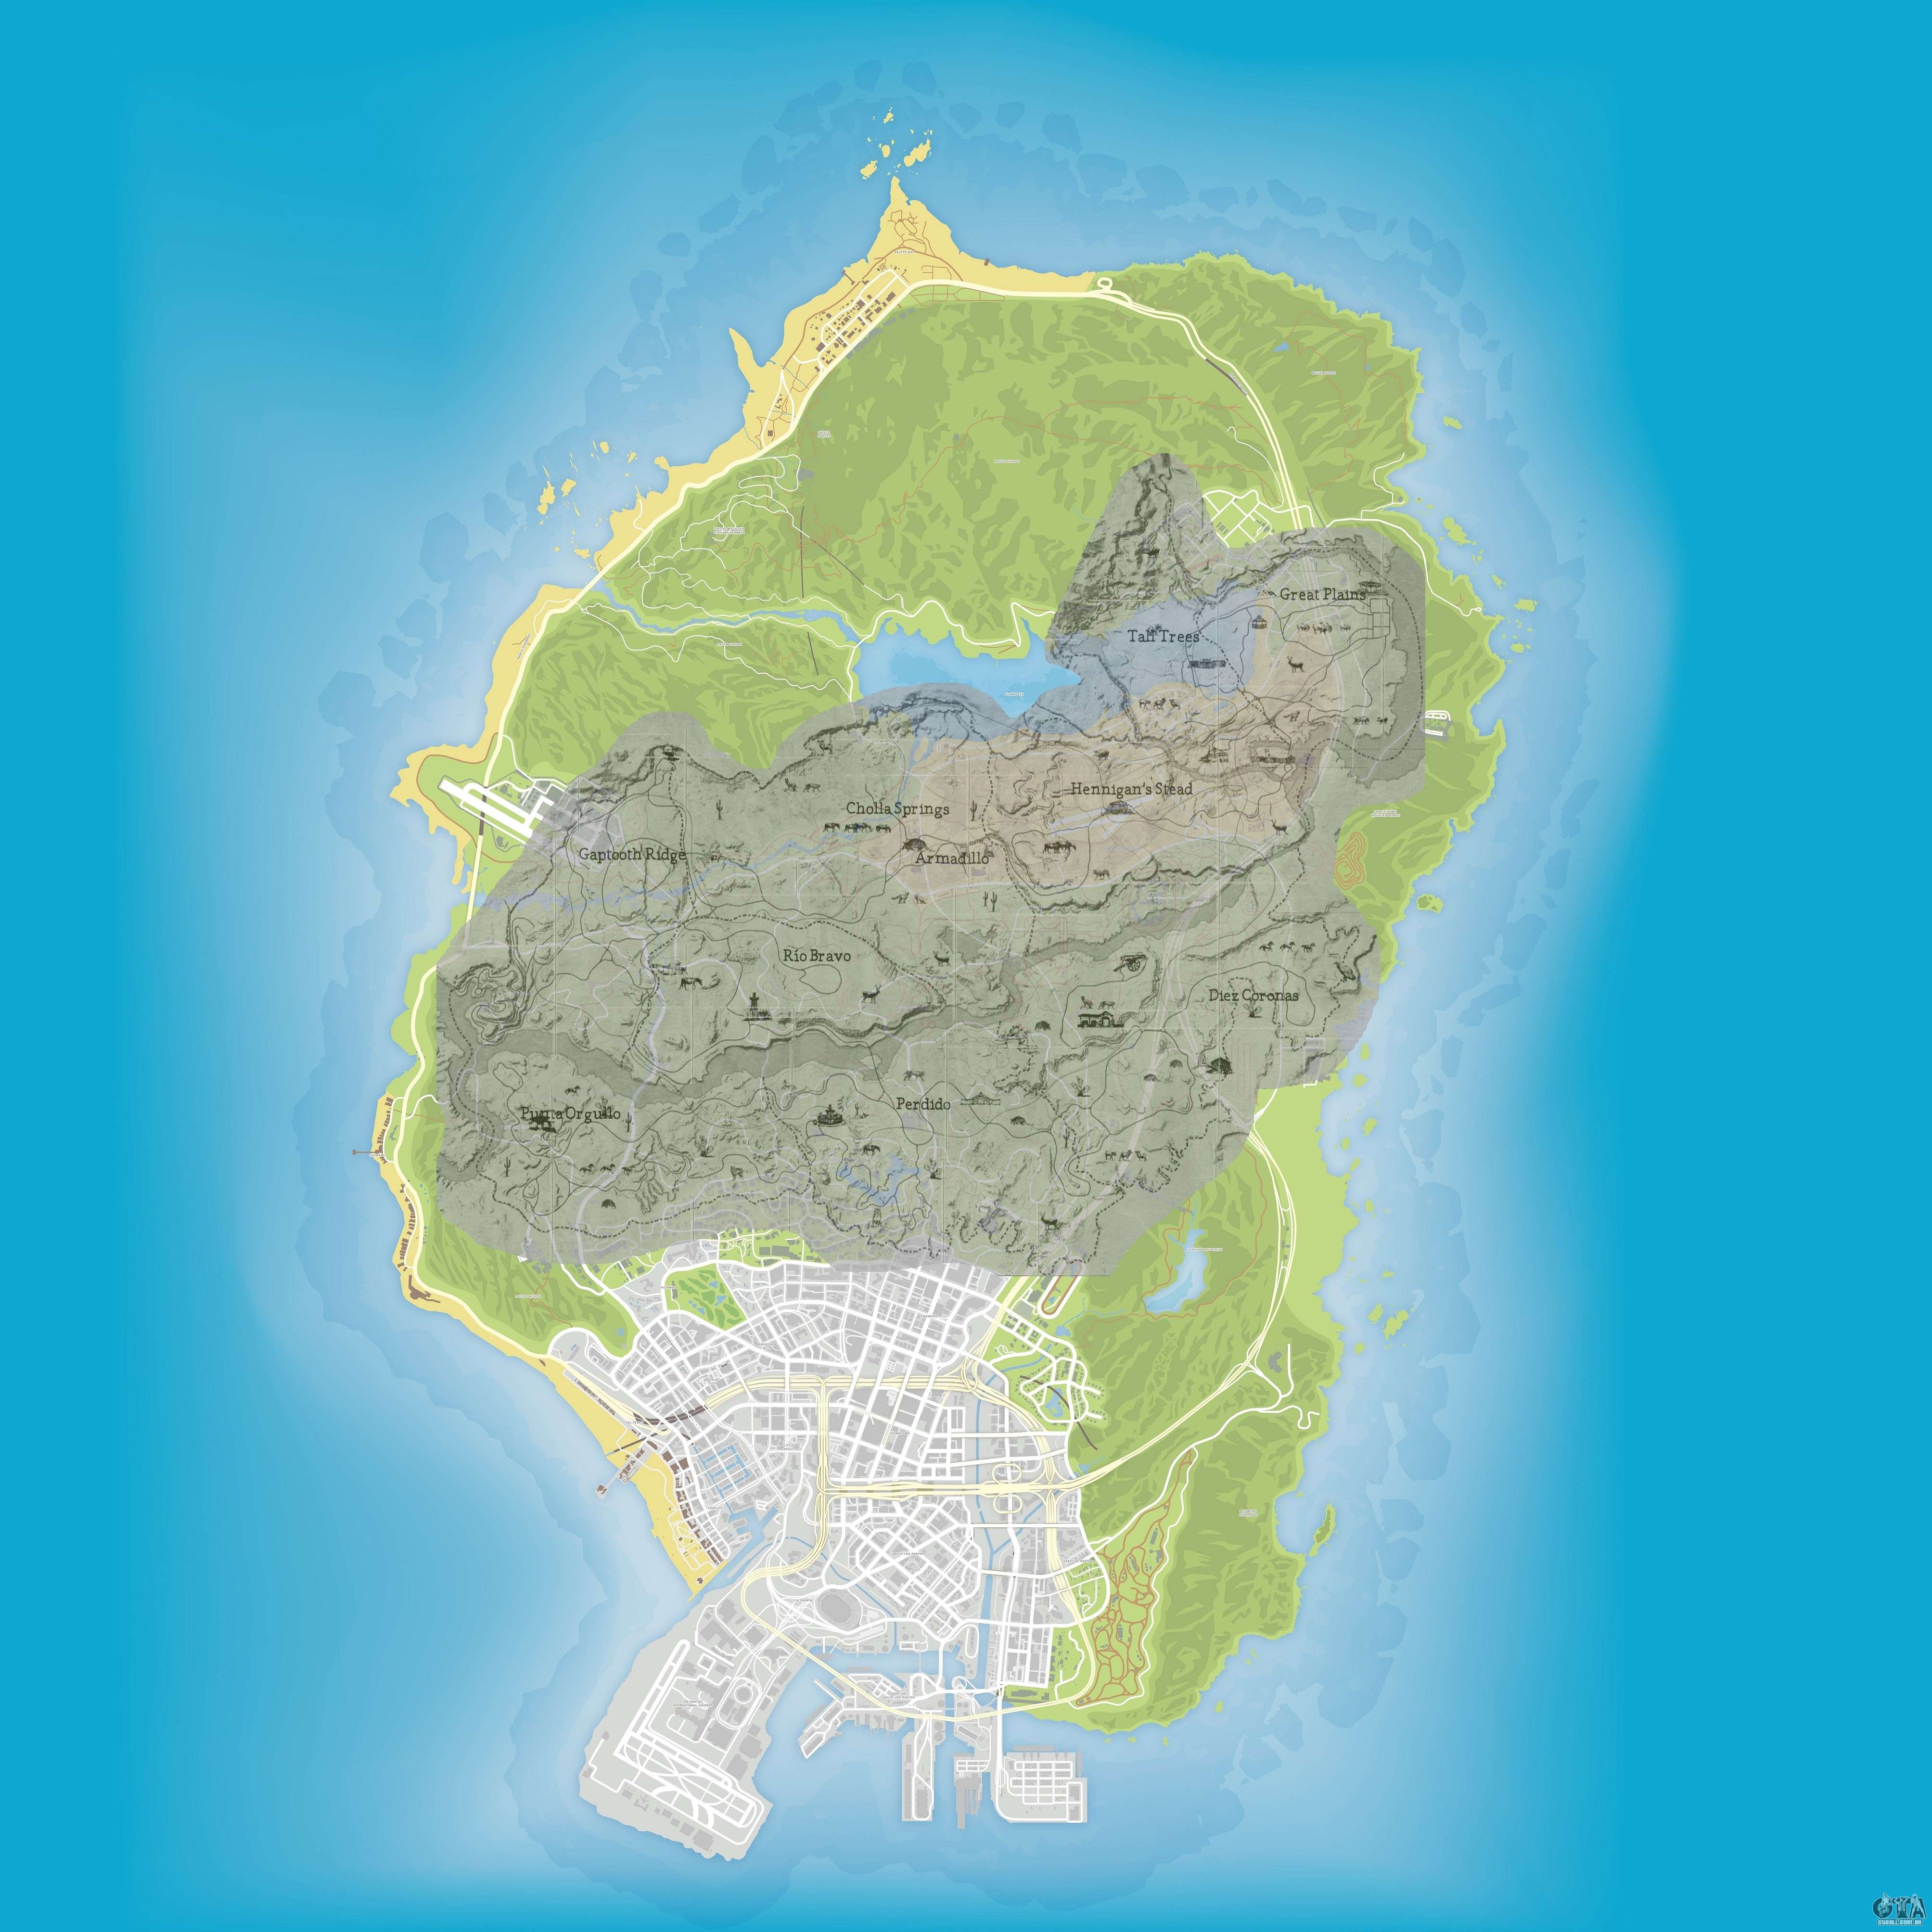 Vaza mapa completo de GTA 5 - 180graus - O Maior Portal do Piauí